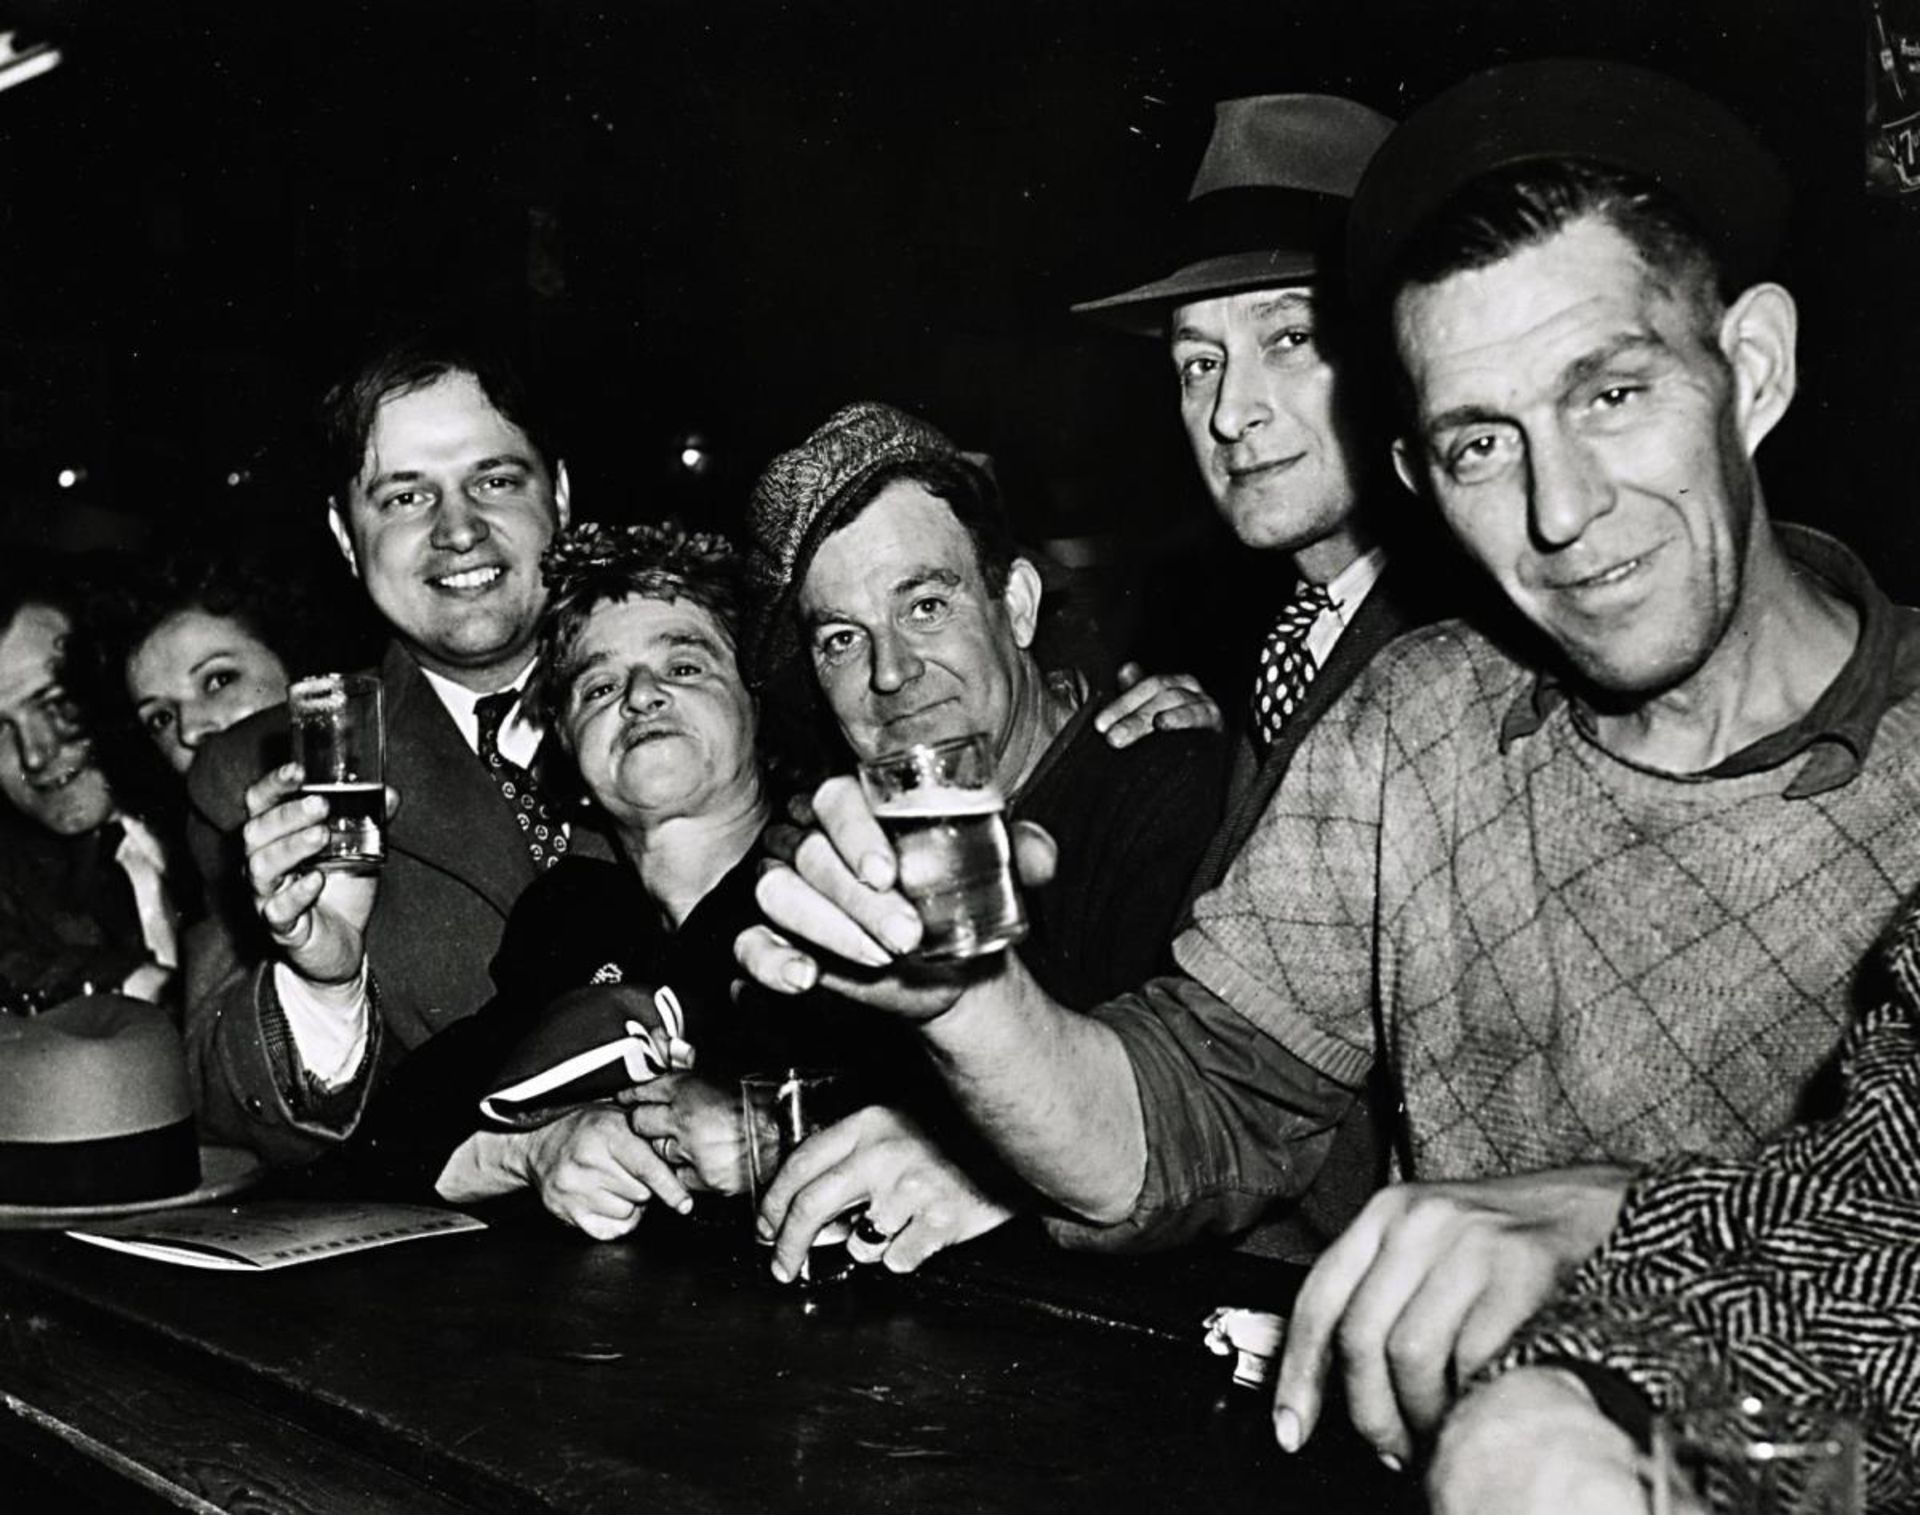 Bar at Sammy's, Bowery N.Y.C., 1940s